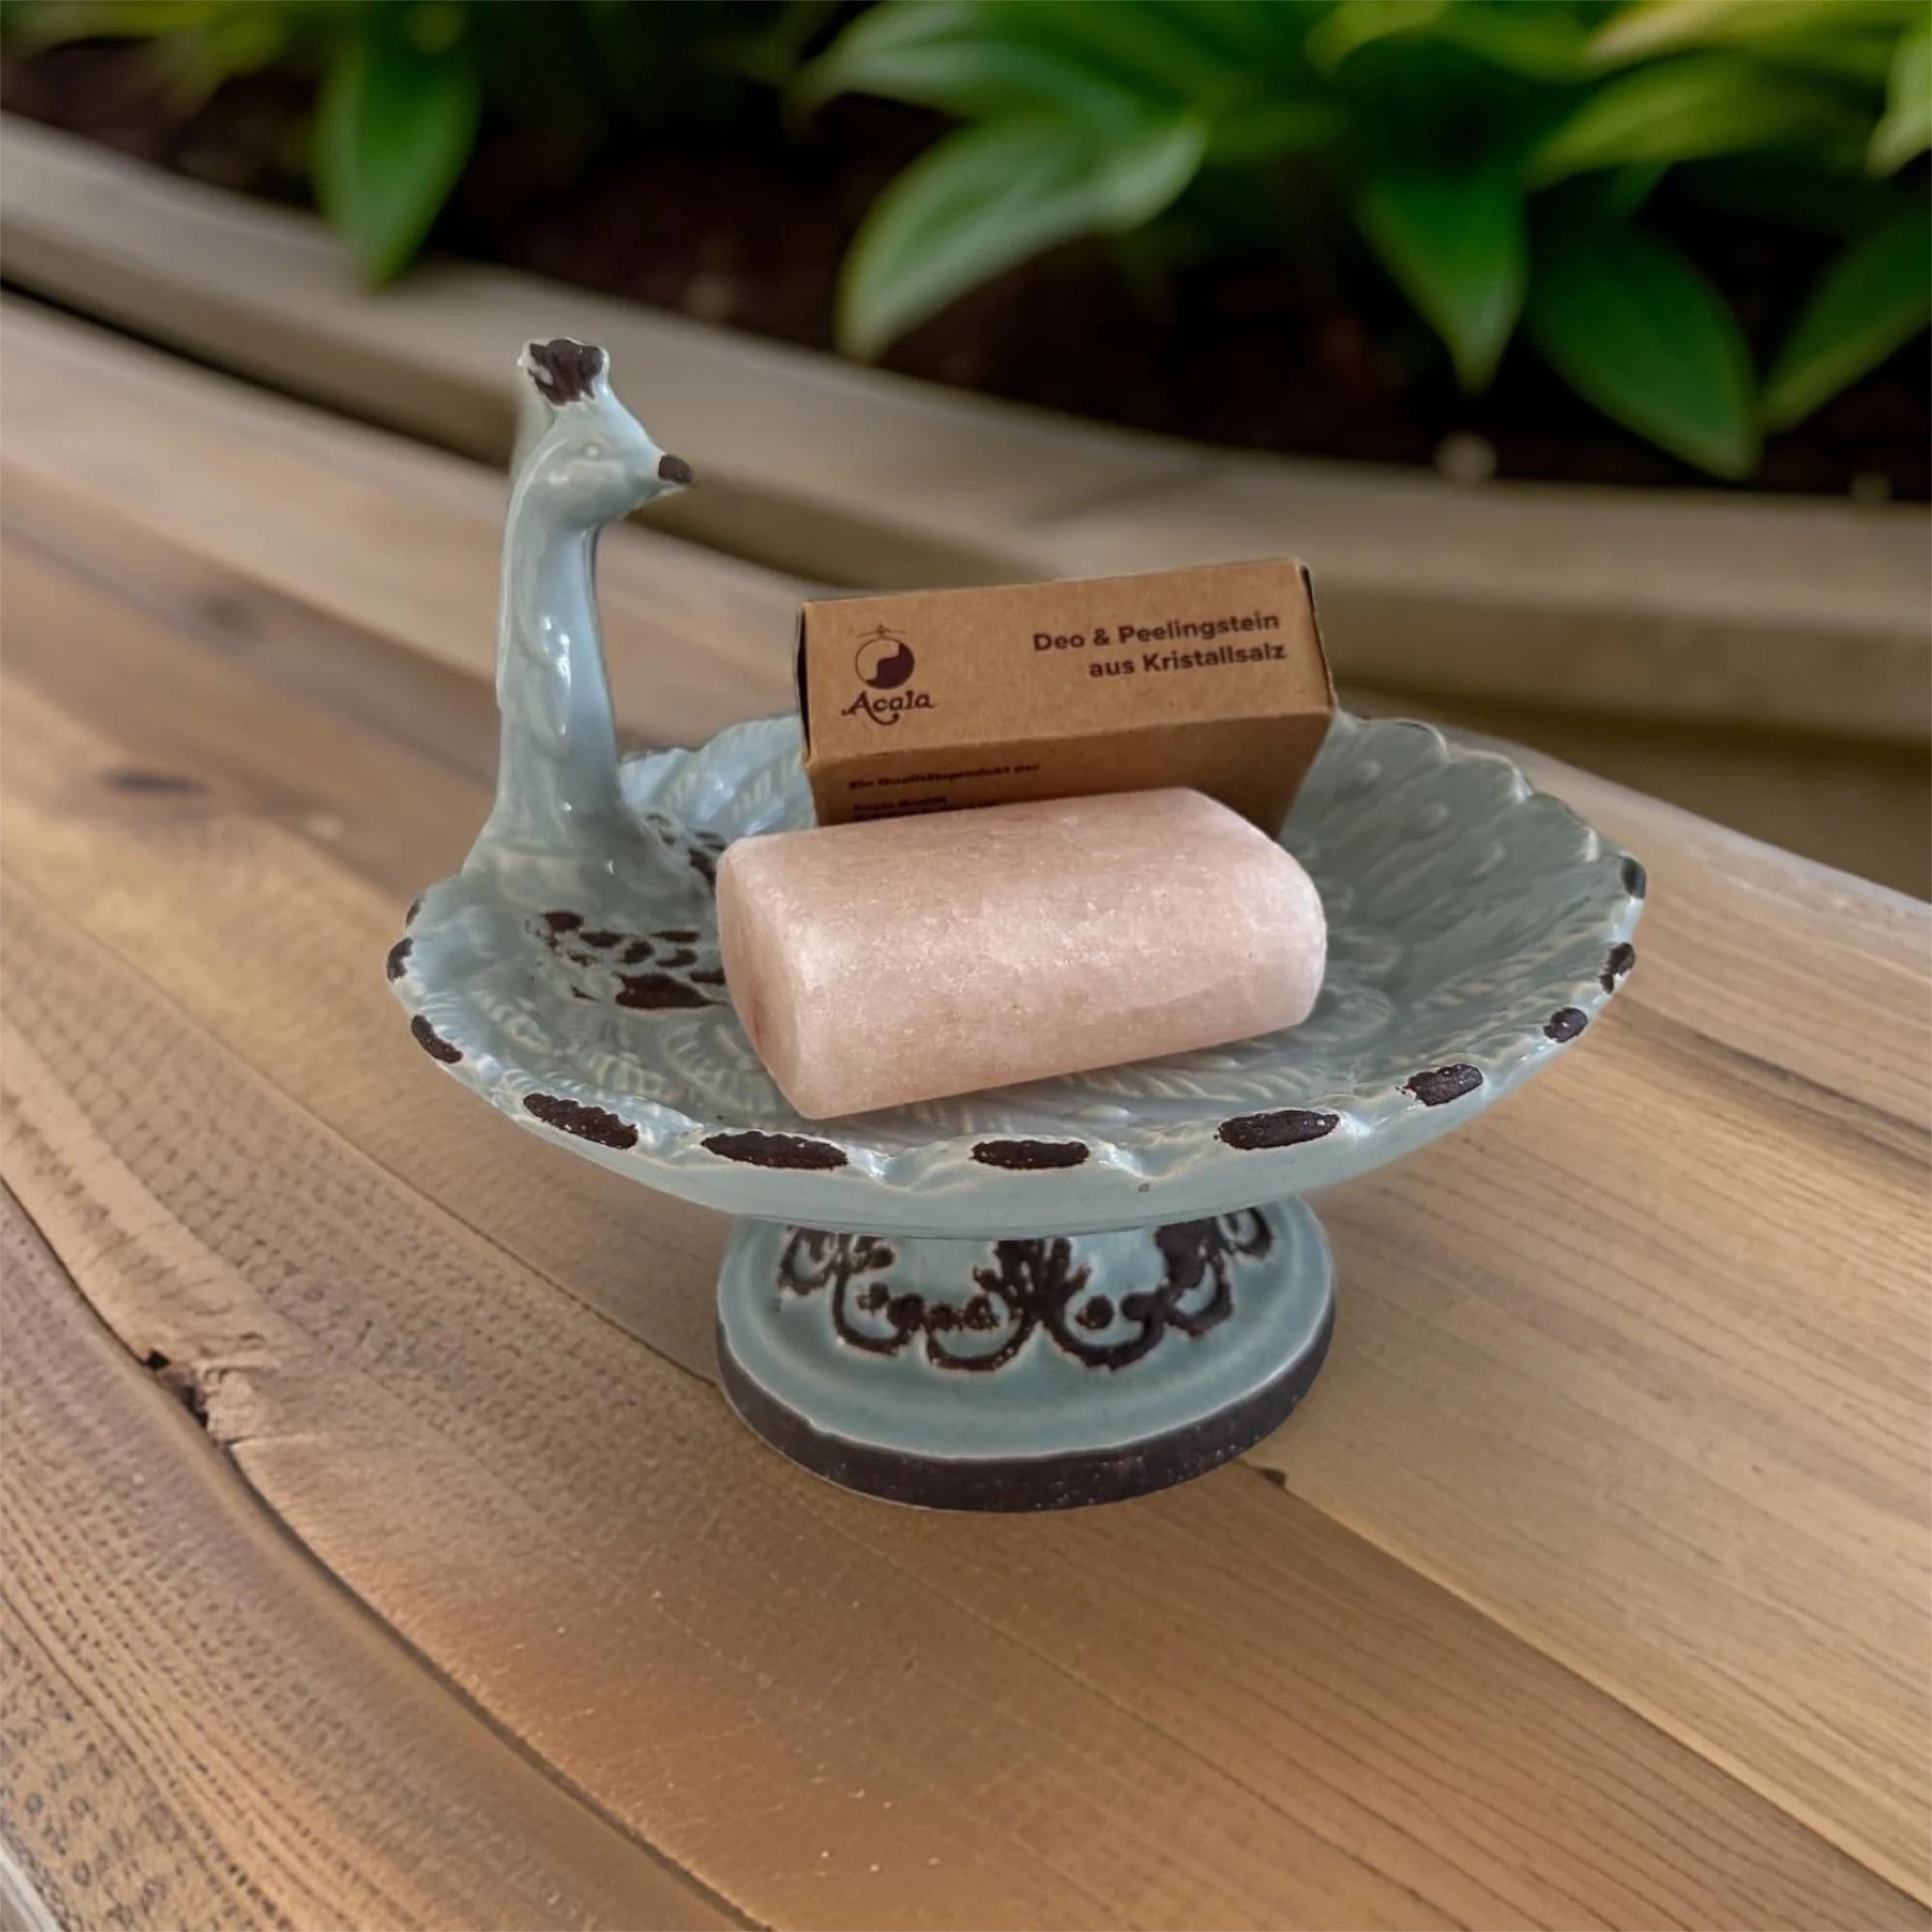 Zu sehen ist ein Stein der aussieht wie ein Stück Seife in hellem rosa. Er liegt zusammen mit dem braunen Verpackungskarton in einer Schale die wie ein Vogel aussieht. Diese steht auf einem braunen Holztisch. Das Bild zeigt den Salz Deo Stein von Acala.